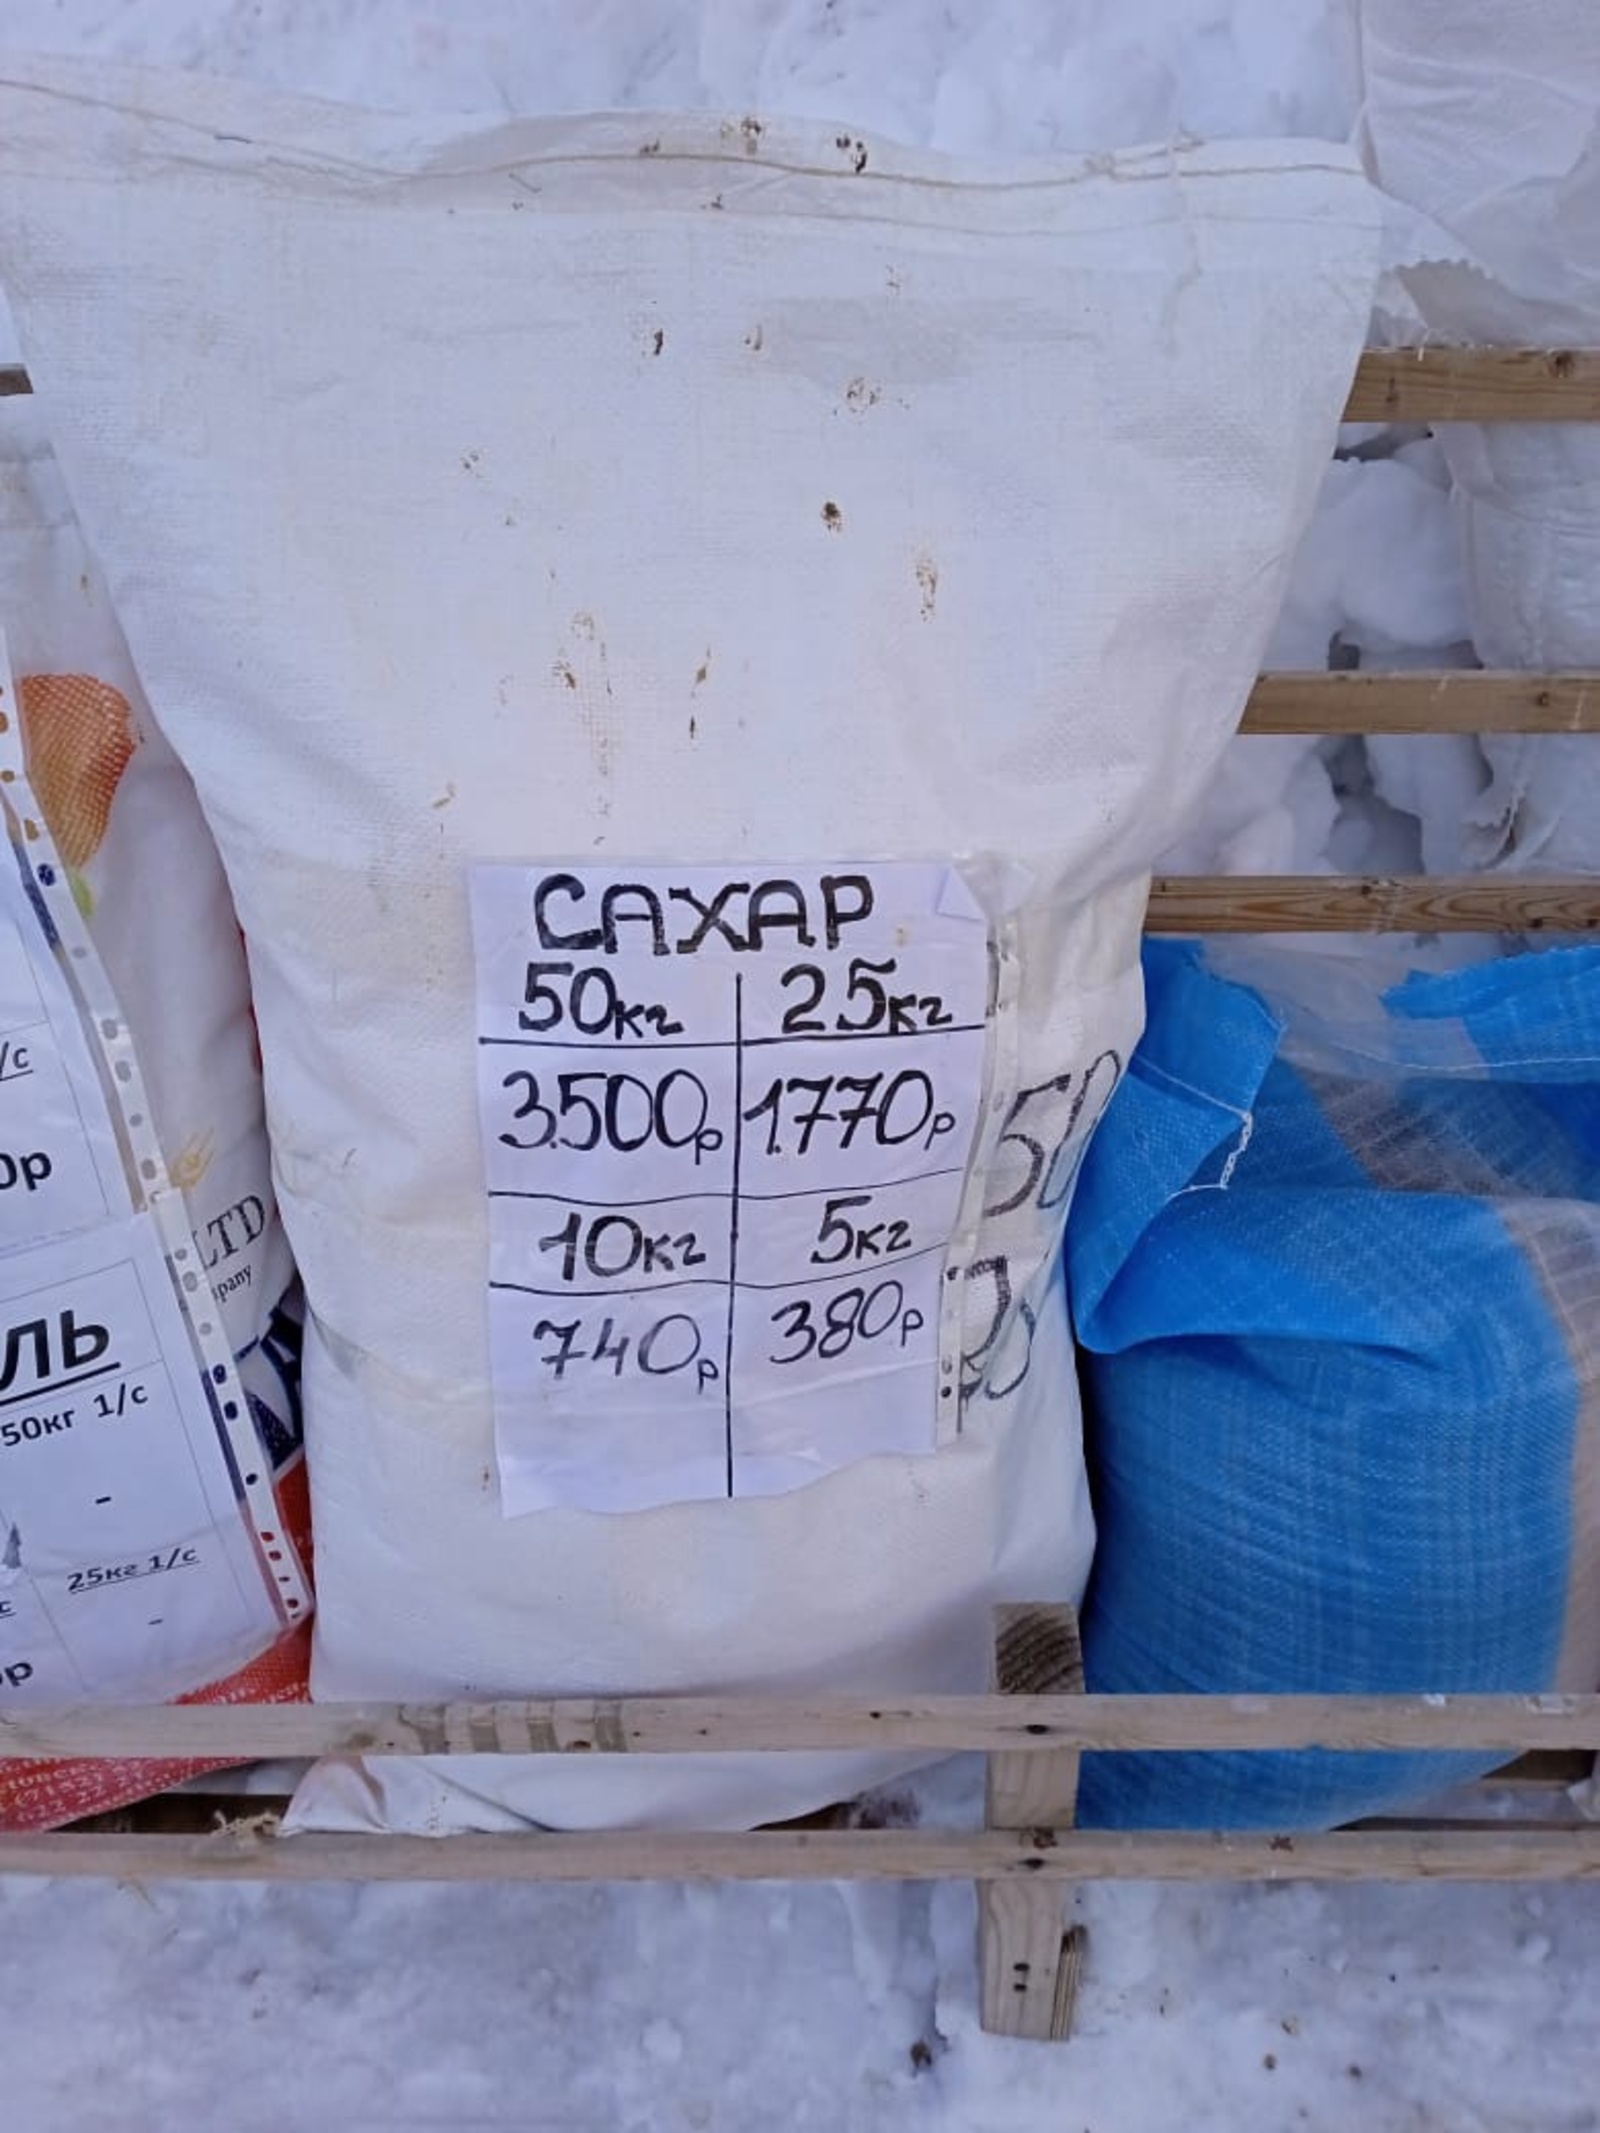 ФАС России выдал сахарным заводам предписания для соблюдения ответственного ценообразования на сахар